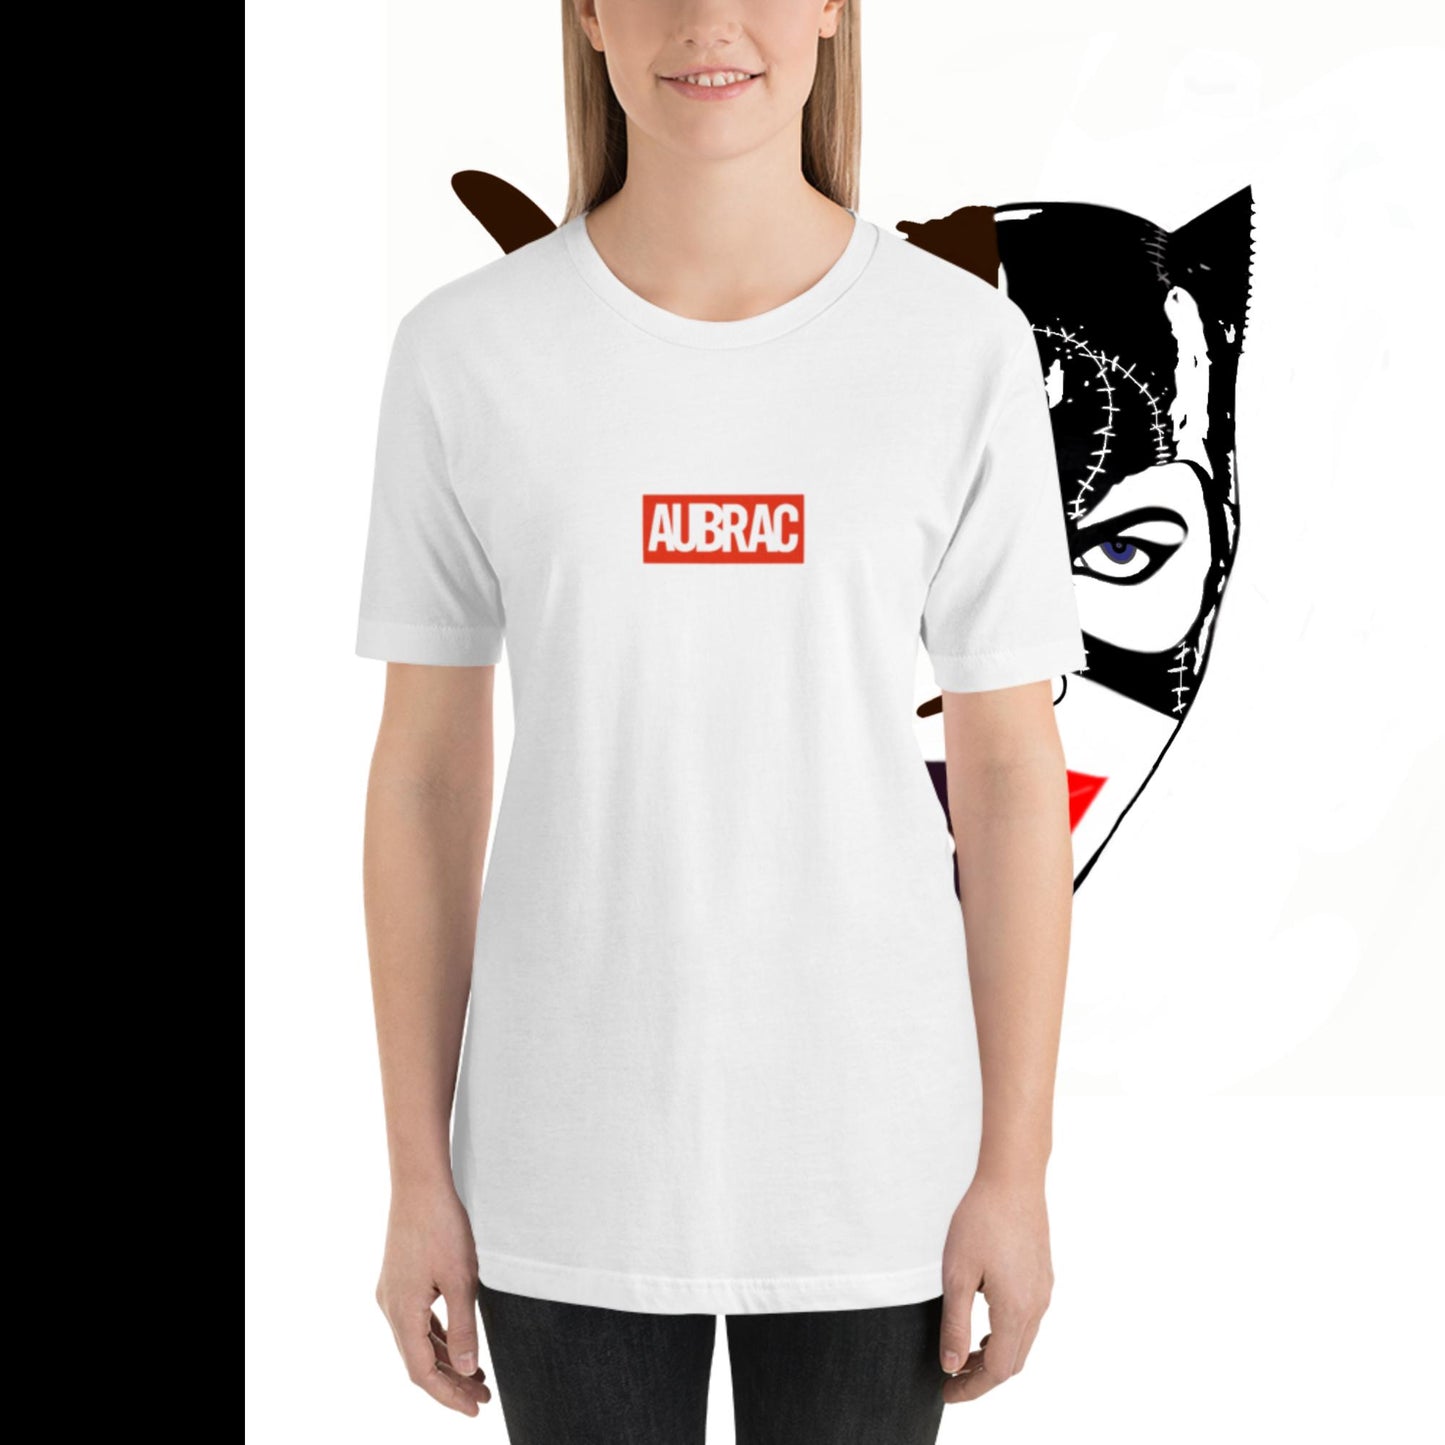 Super Héros, Aubrac, T-shirt unisexe